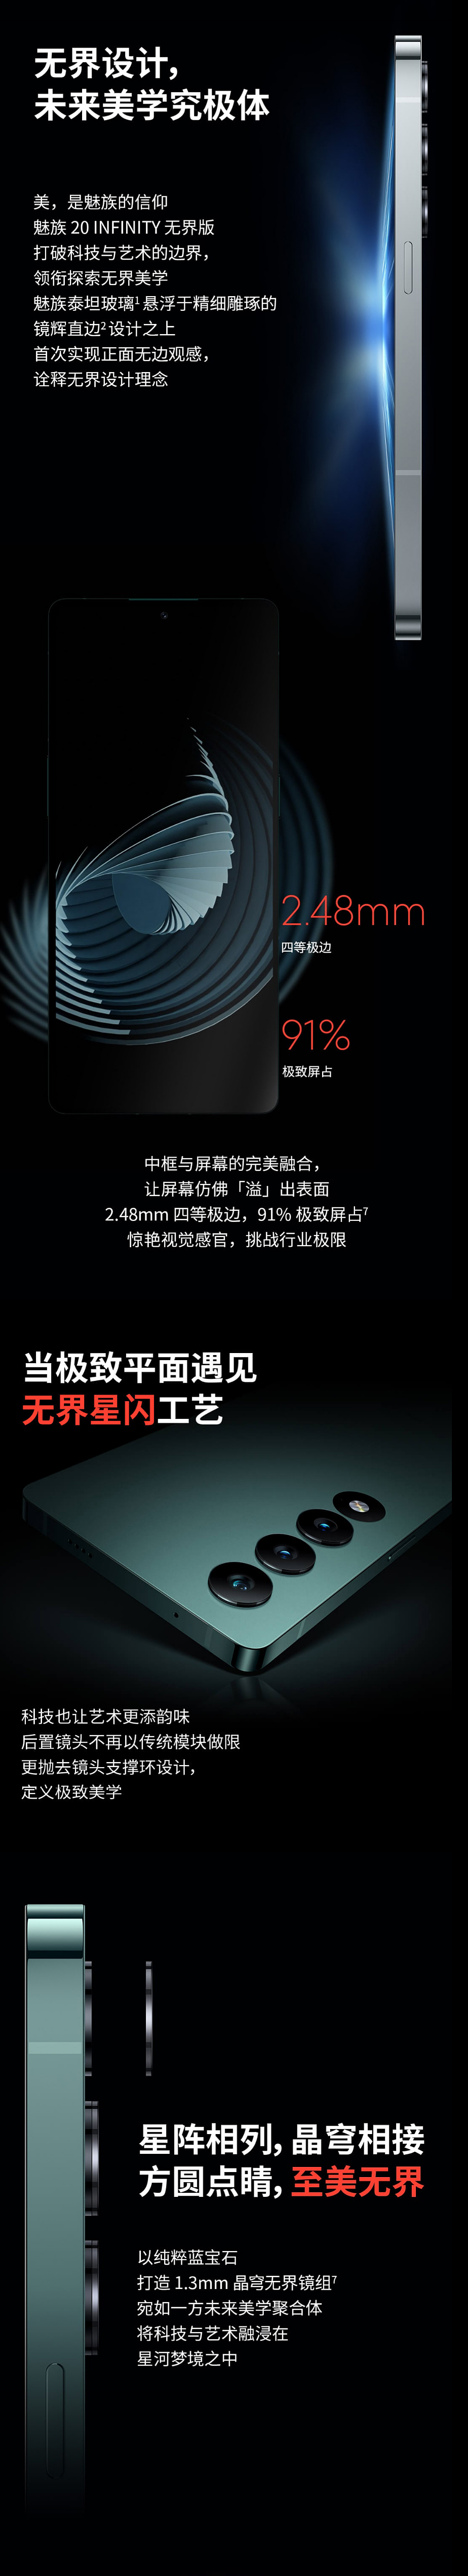 魅族 20 INFINITY 无界版机型开启预约，6 月 12 日 10 点开售 - 2